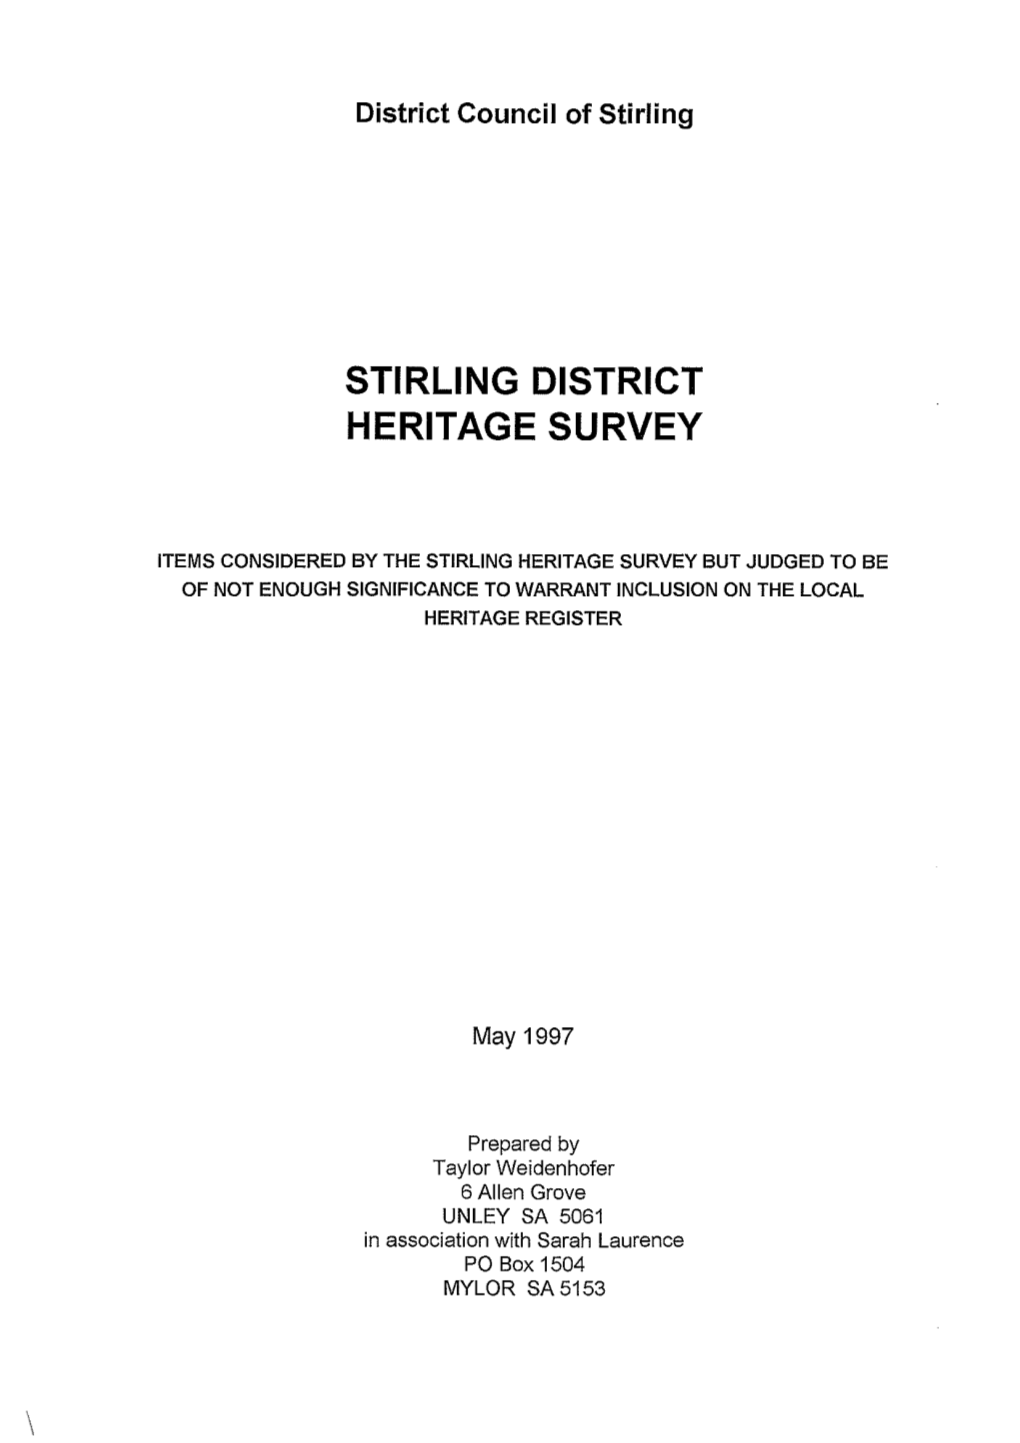 Stirling District Heritage Survey